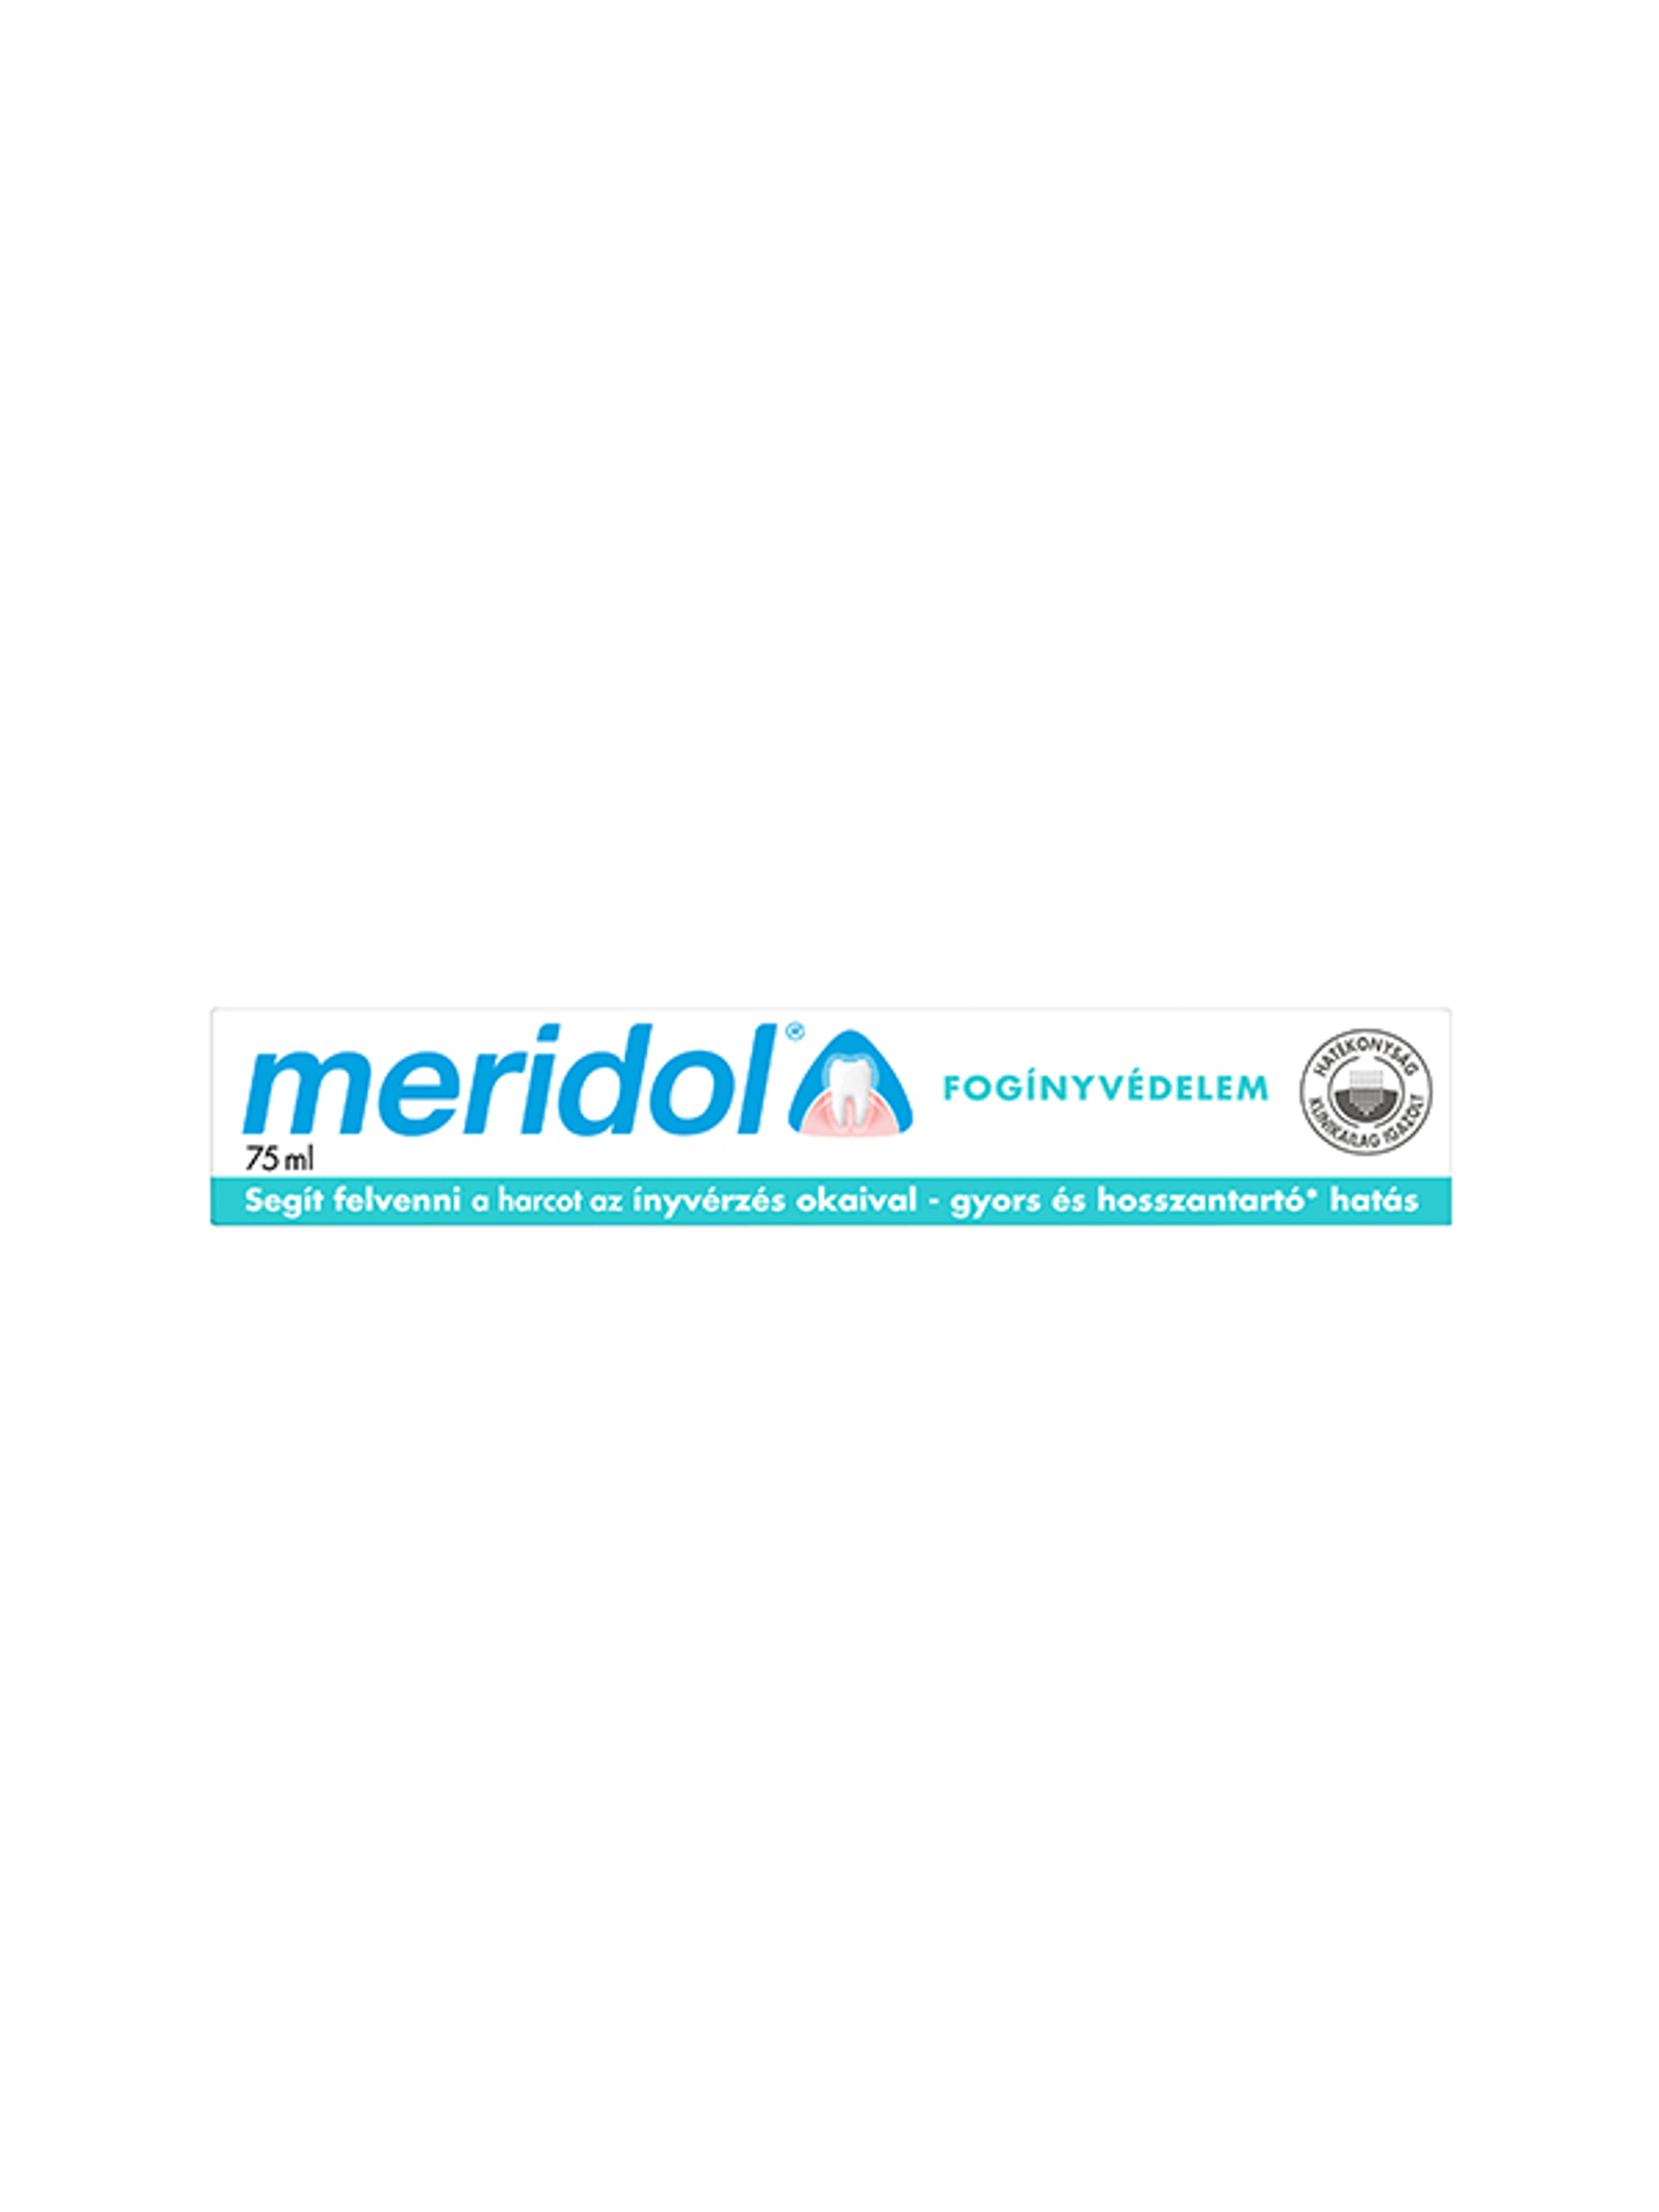 Meridol Fogínyvédelem fogkrém - 75 ml-5